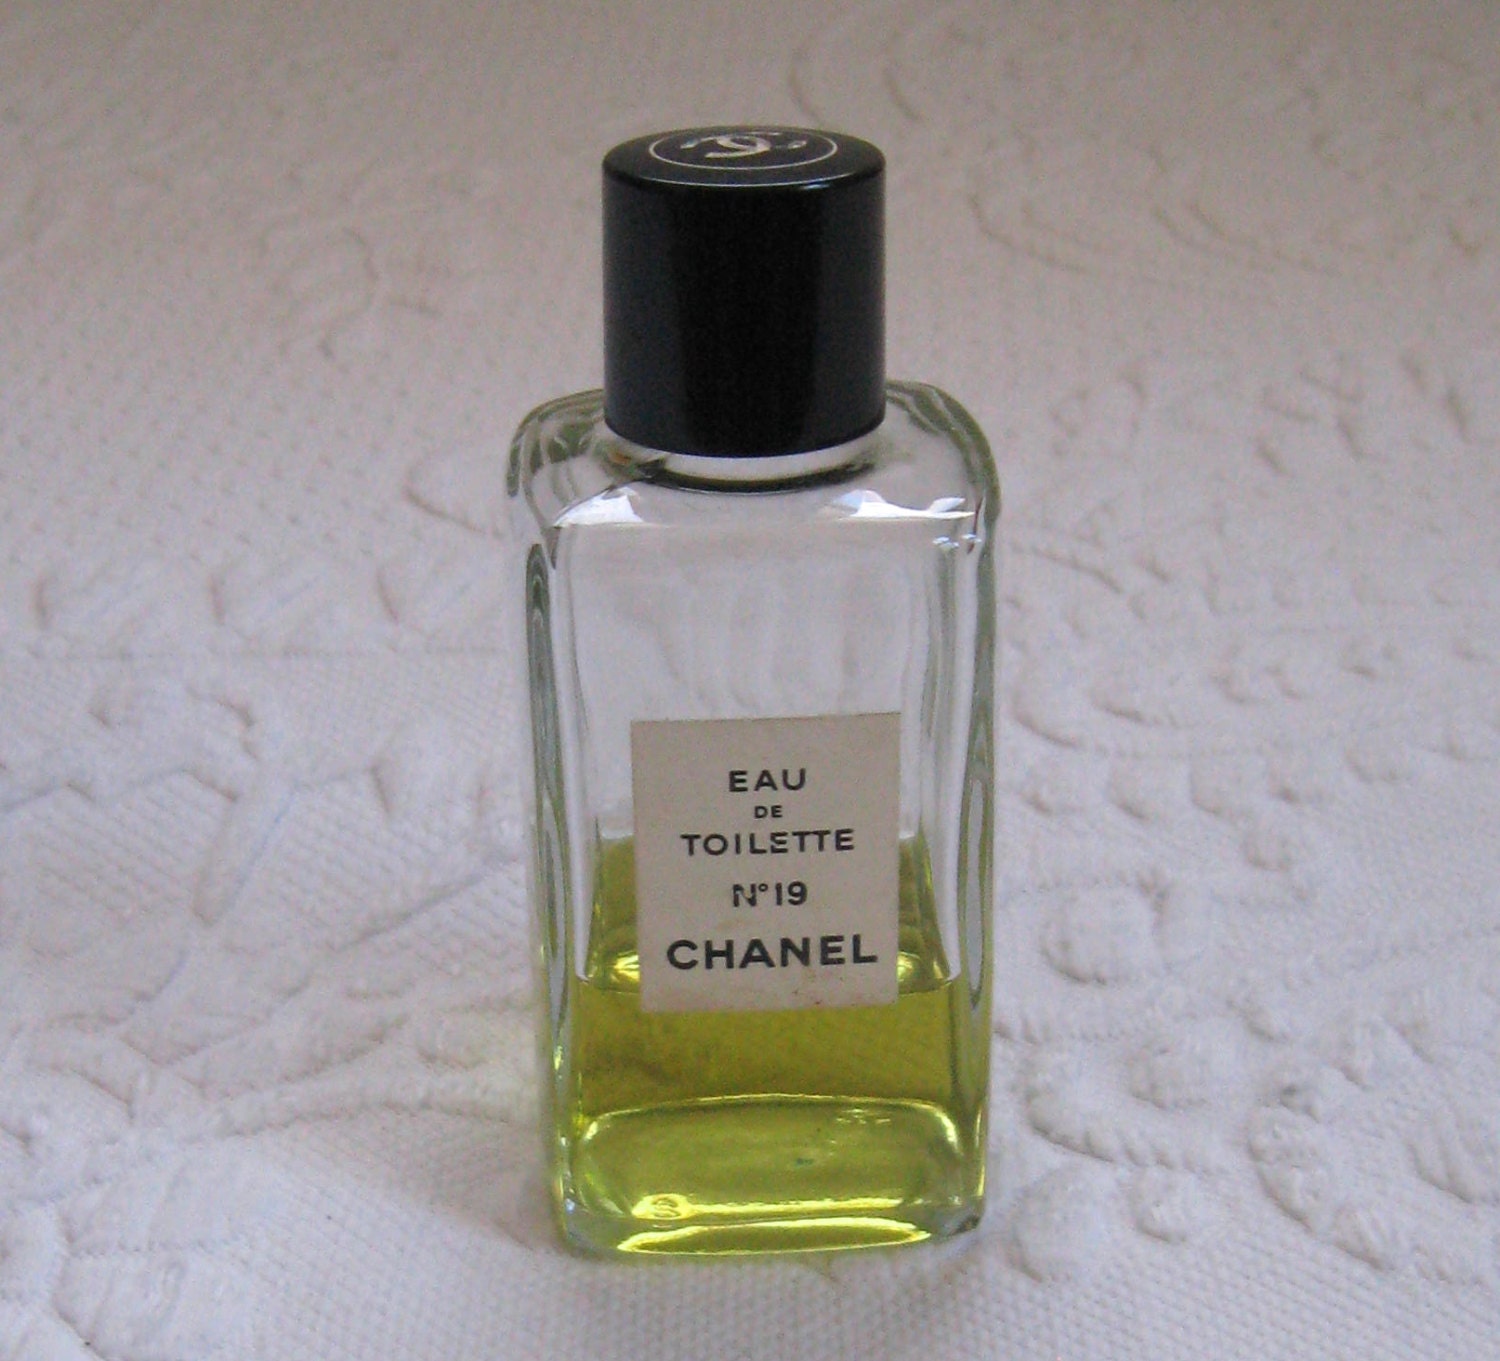 Vintage Eau de Toilette Chanel No 19 / Chanel perfume Bottle